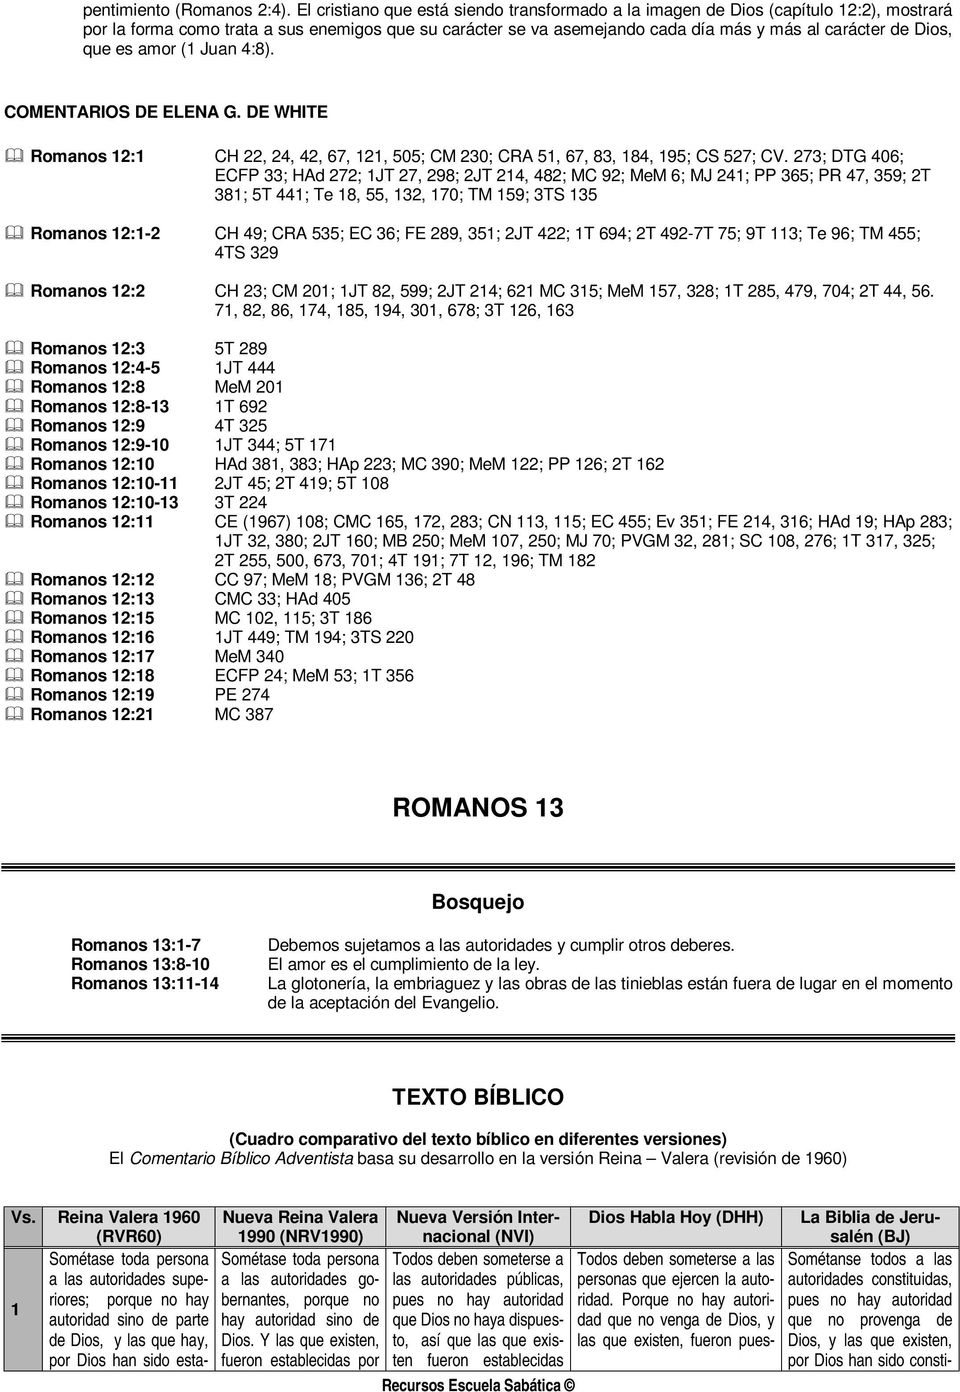 ROMANOS 12. Bosquejo TEXTO BÍBLICO - PDF Descargar libre